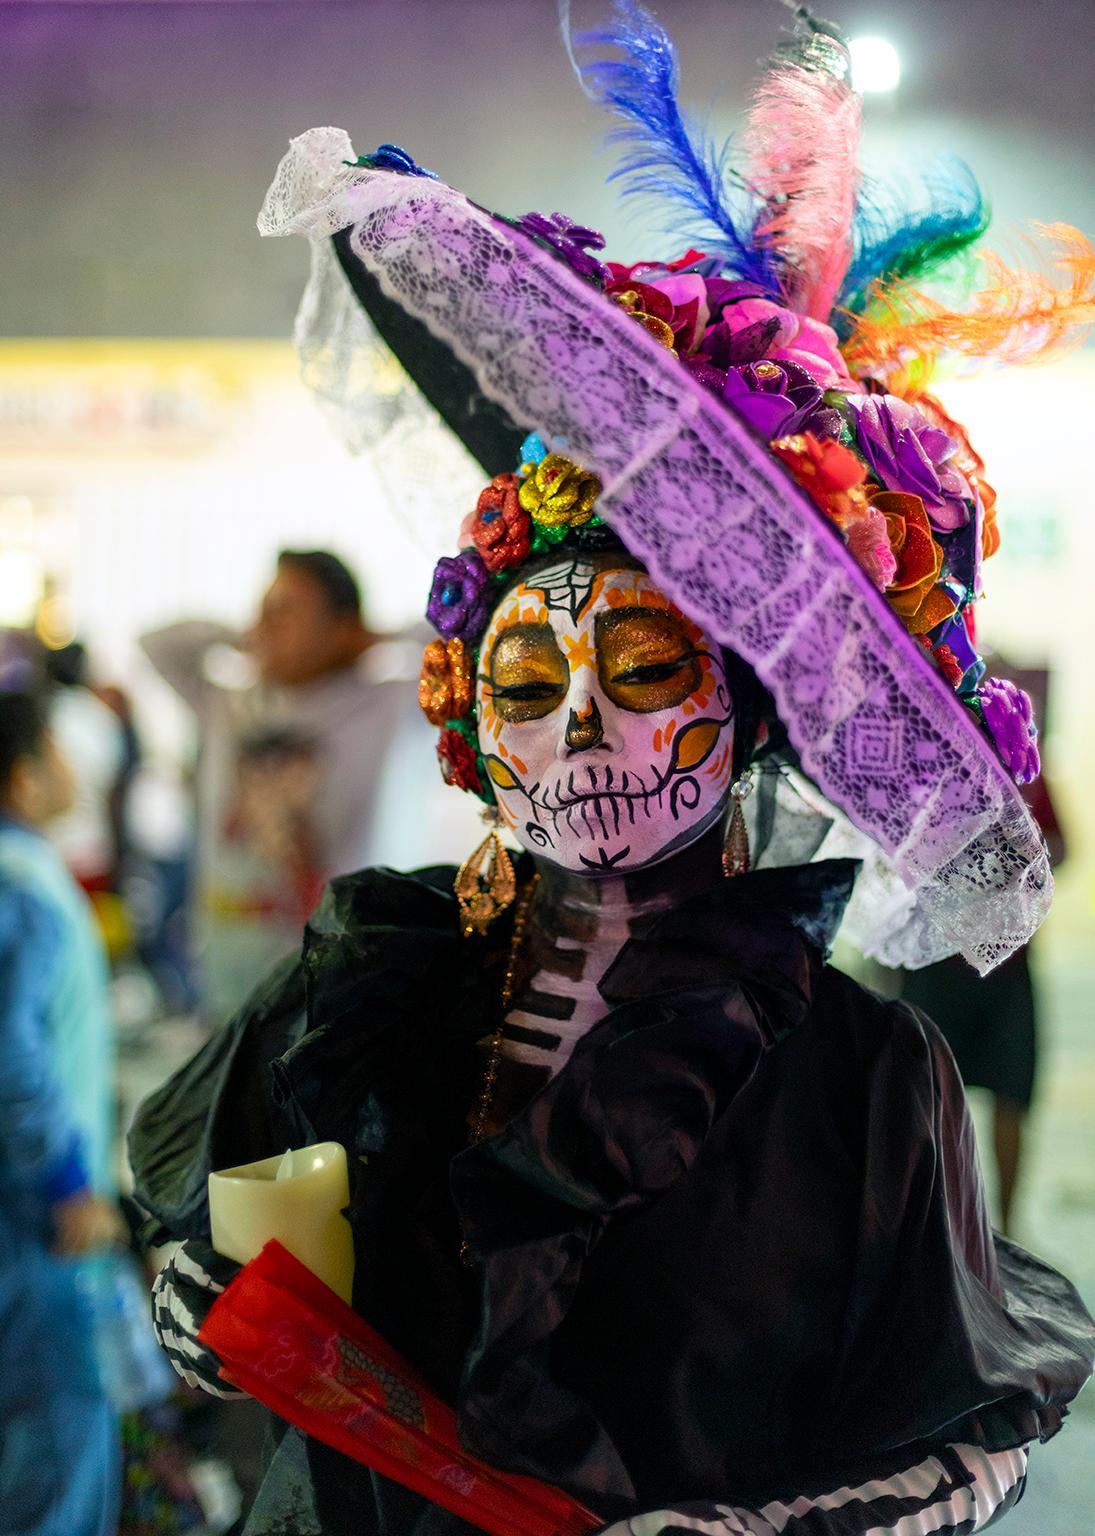  Cosmo Condina Color Photograph – Death with attitude, Day of the Dead, Dia de los Muertos, Isla Mujeres, Mexiko